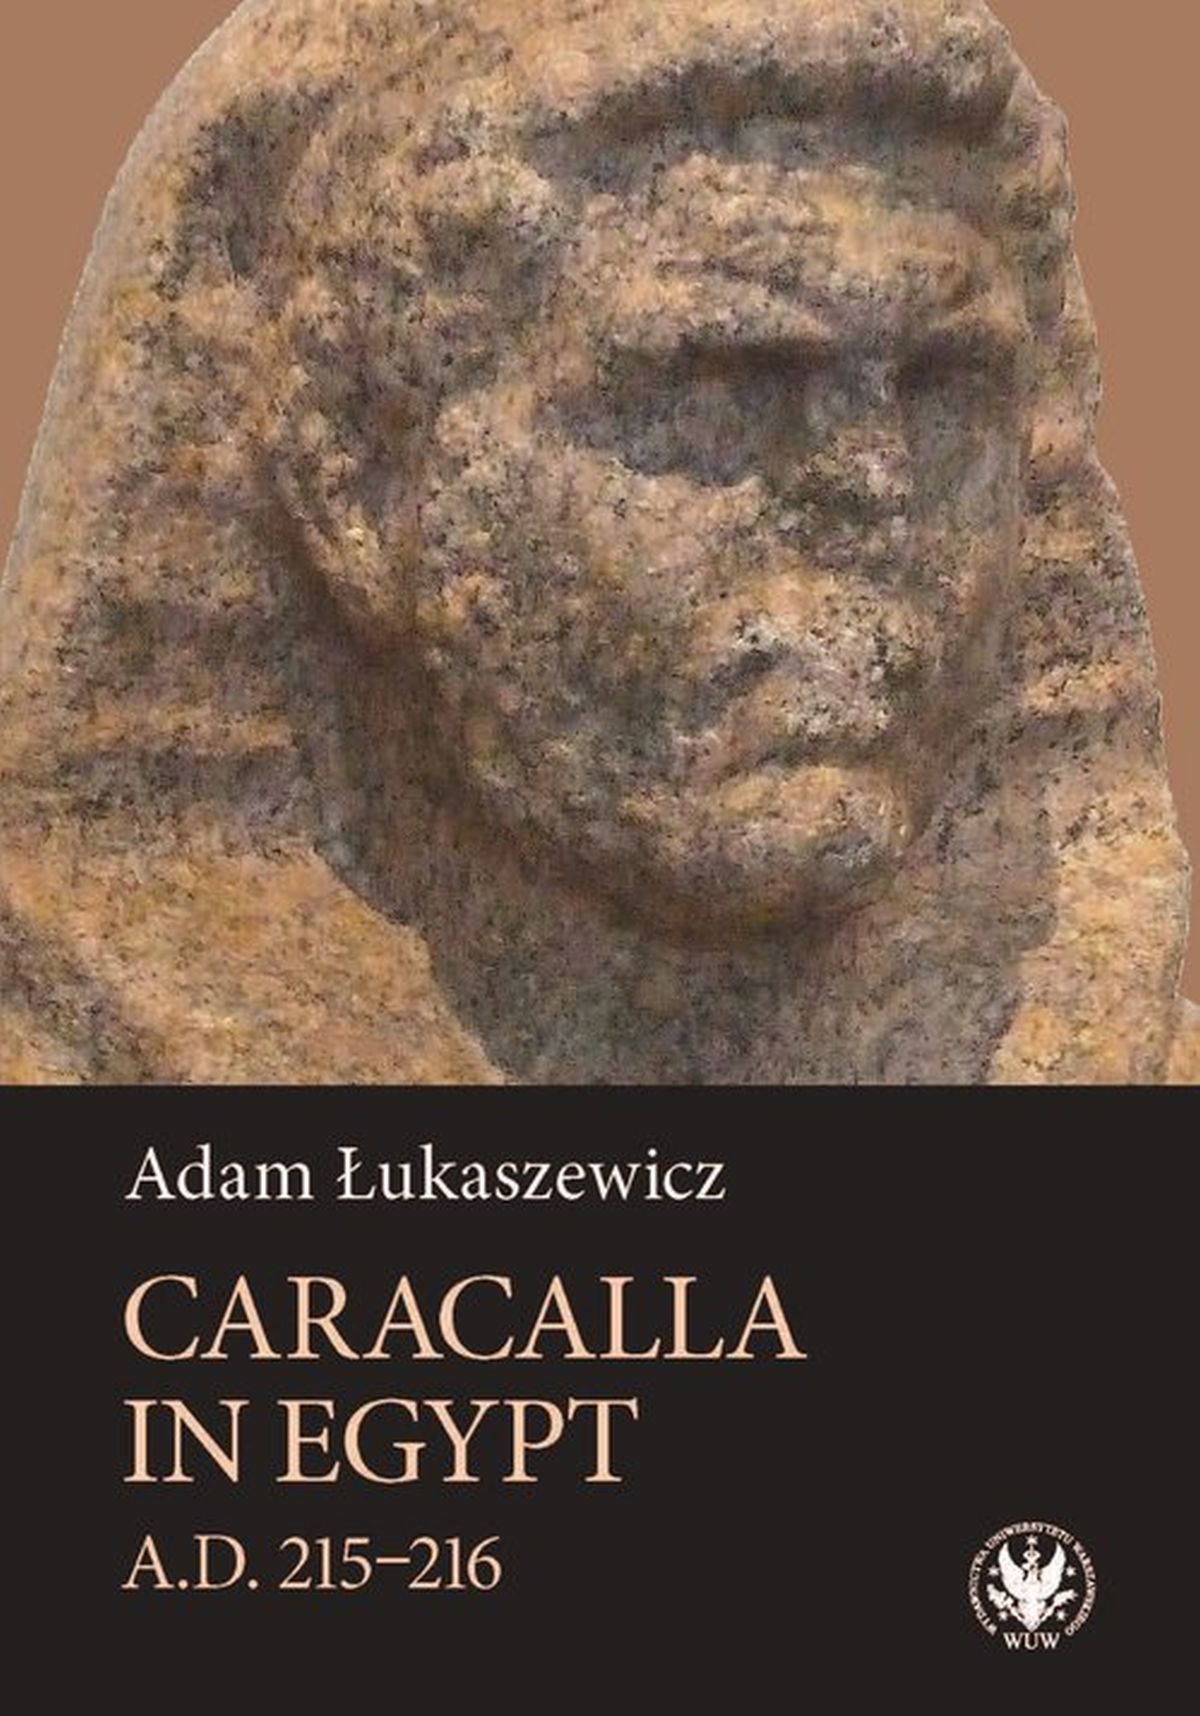 Caracalla in Egypt (A.D. 215-216)